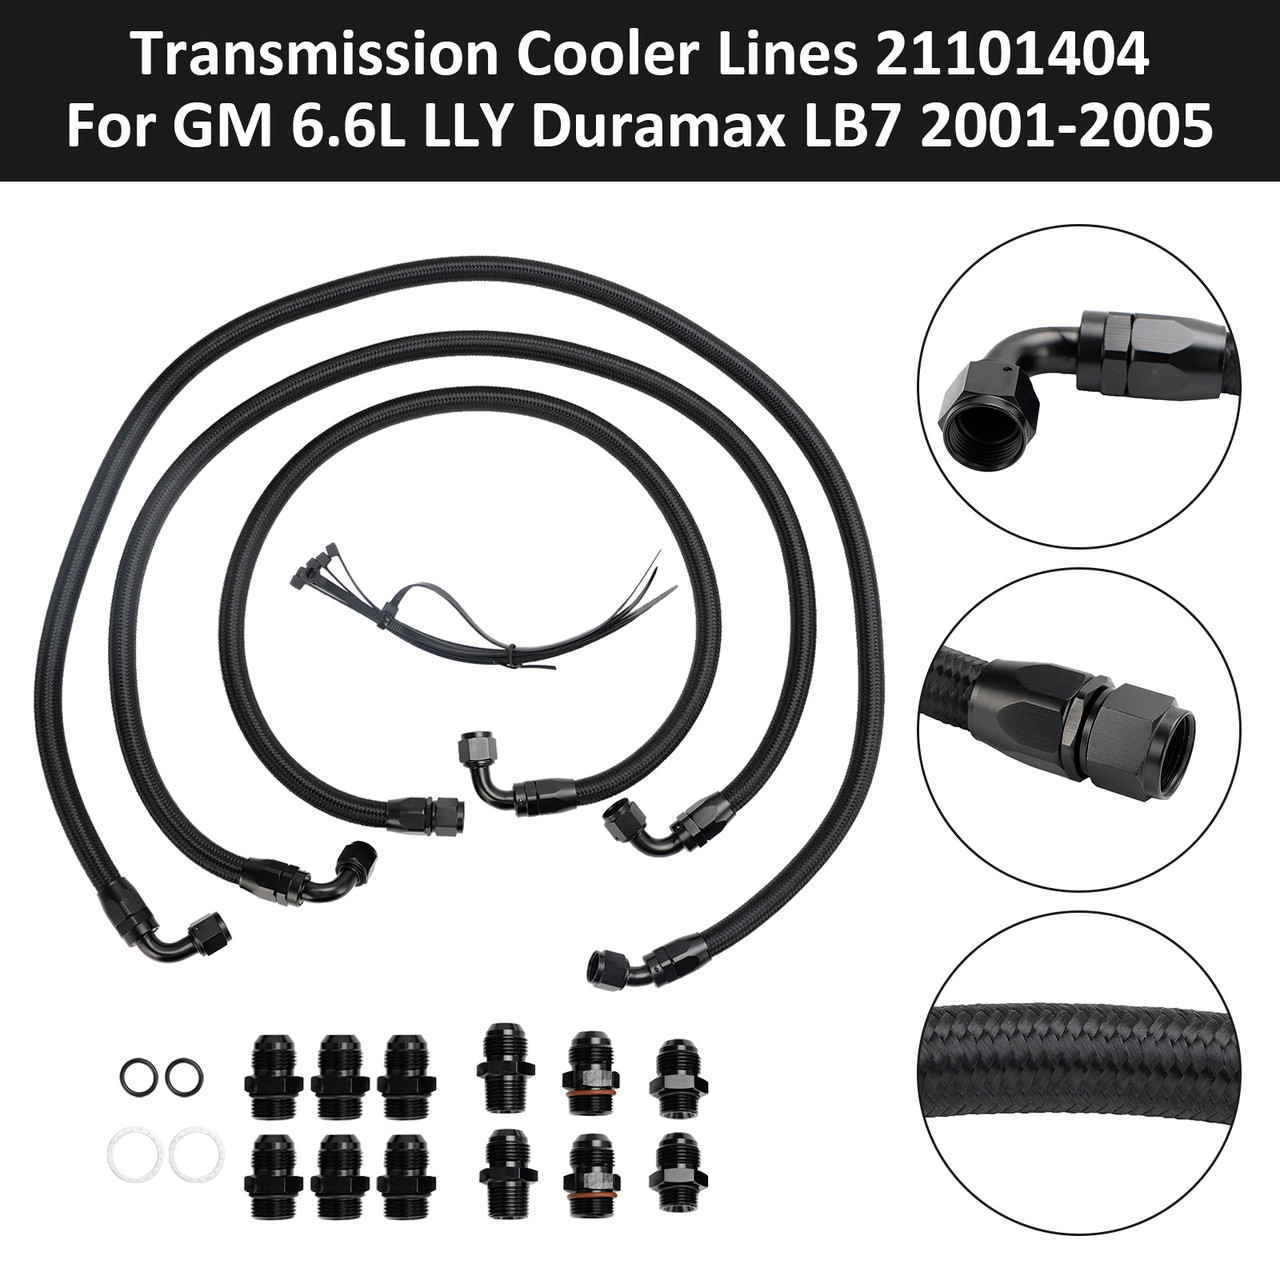 Transmission Cooler Lines 21101404 For GM 6.6L LLY Duramax LB7 2001-2005